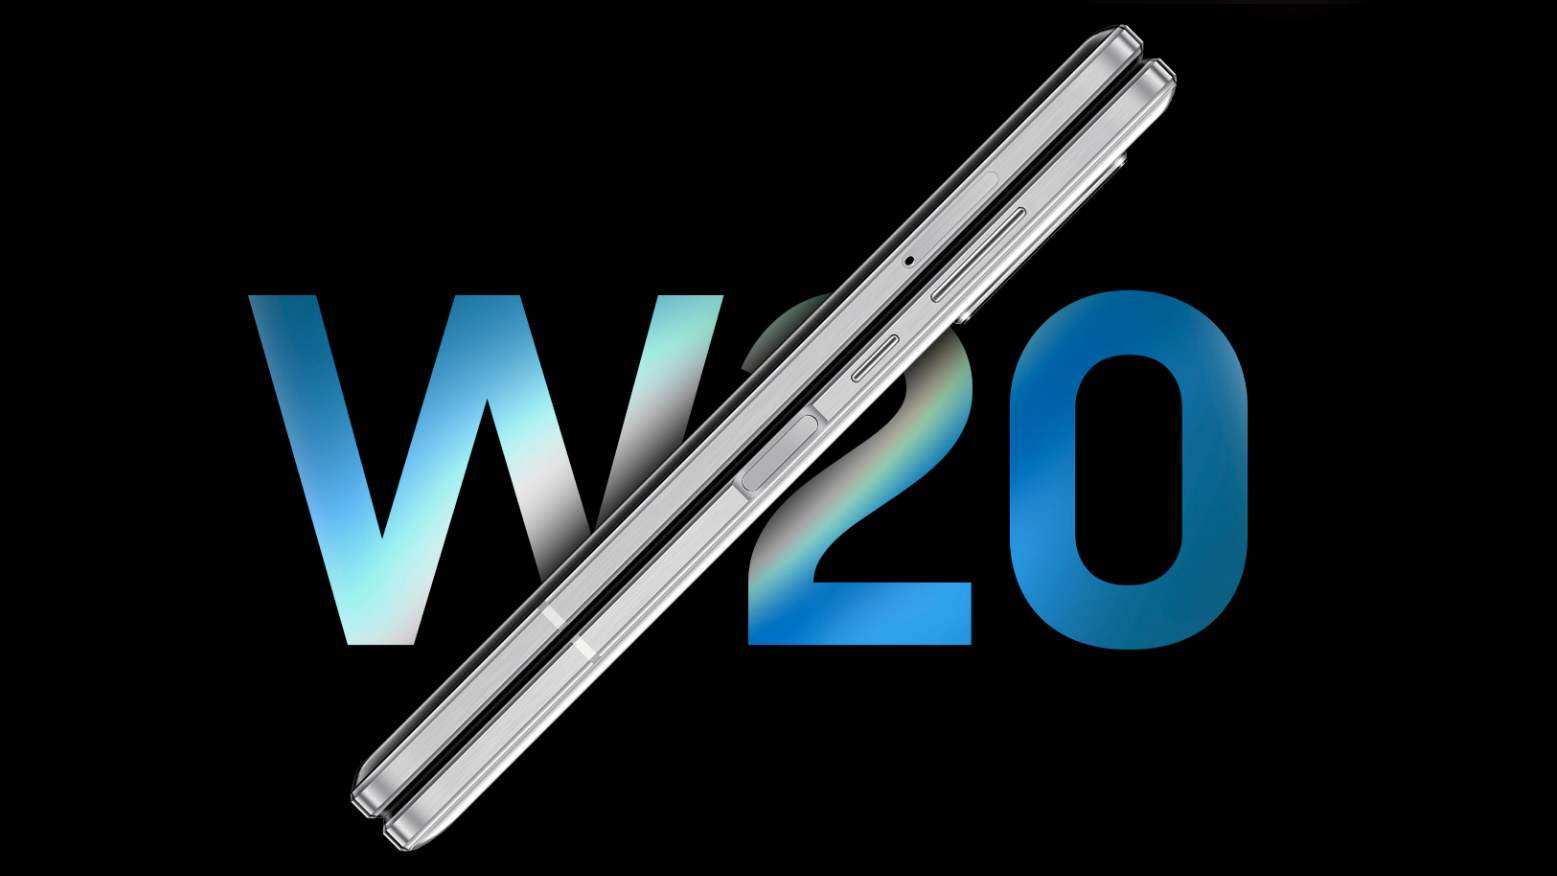 Samsung презентовала сгибаемый смартфон W20 5G